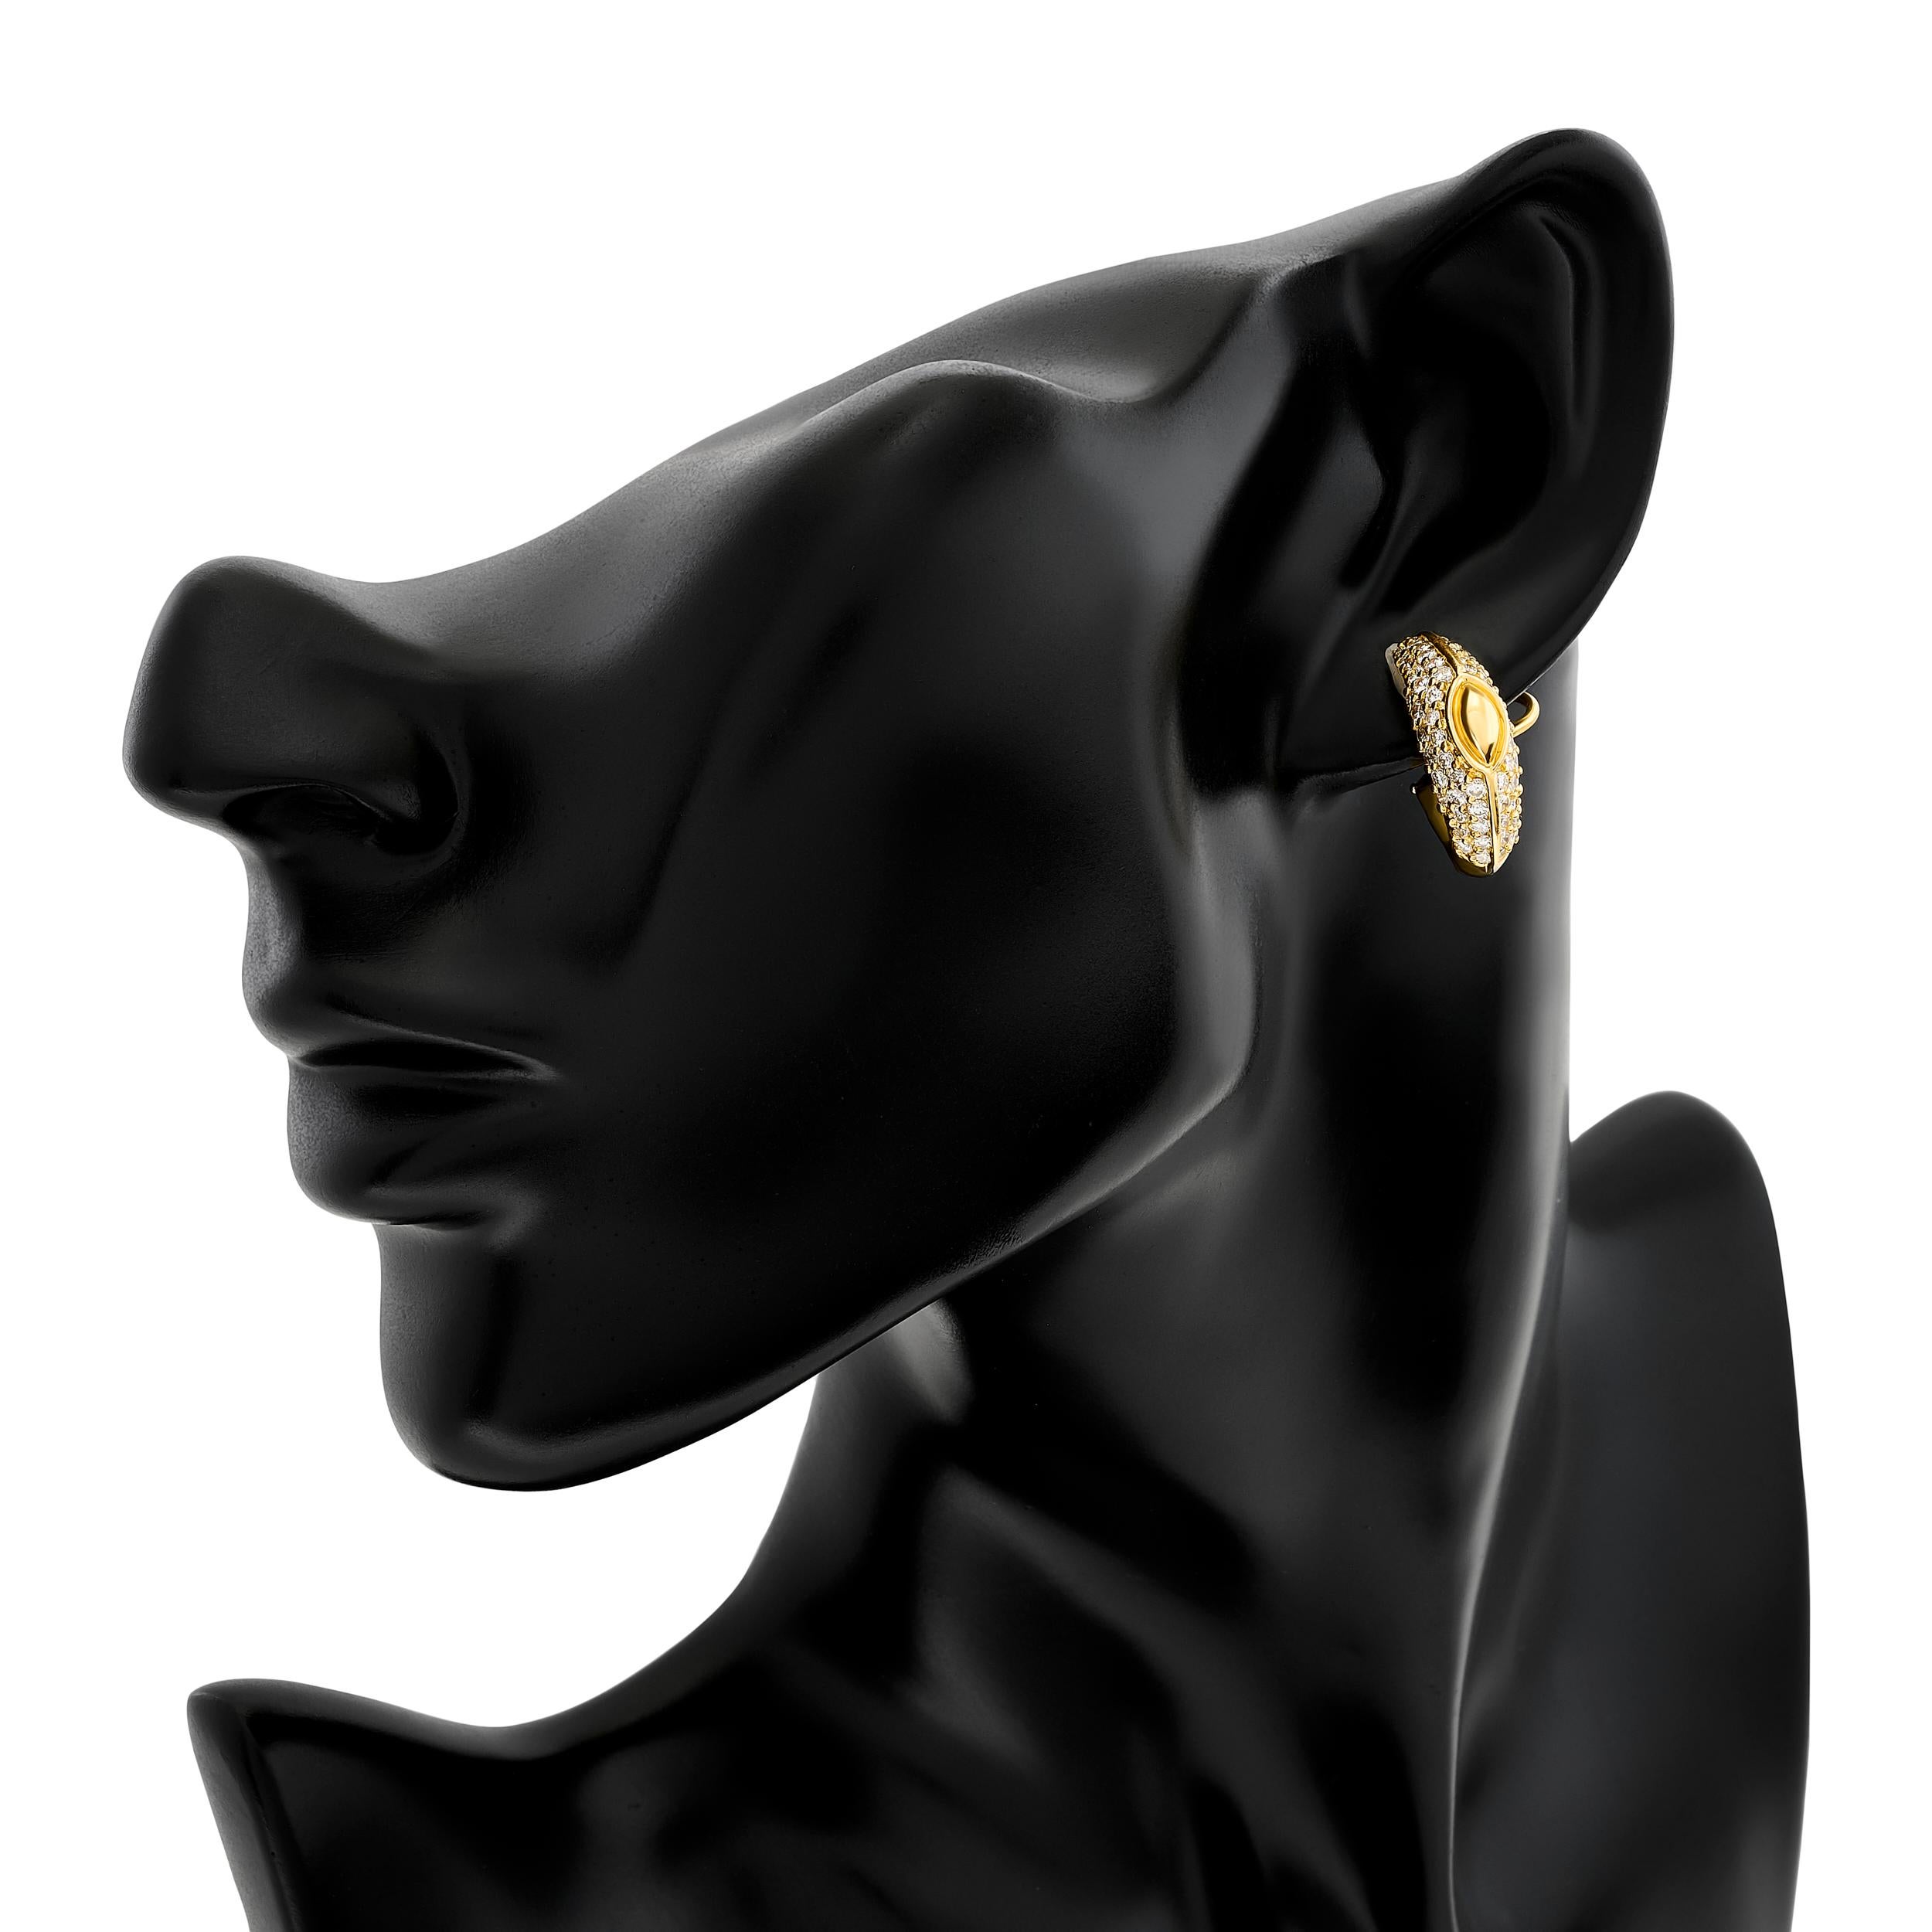 Eine Mischung aus Luxus und Raffinesse mit diesen Hammerman Brother Ohrringen, die sorgfältig aus 18 Karat Gelbgold gefertigt und mit funkelnden Diamanten verziert sind.

Diese Ohrringe bestehen aus 64 runden Diamanten mit einem Gewicht von ca. 3,00